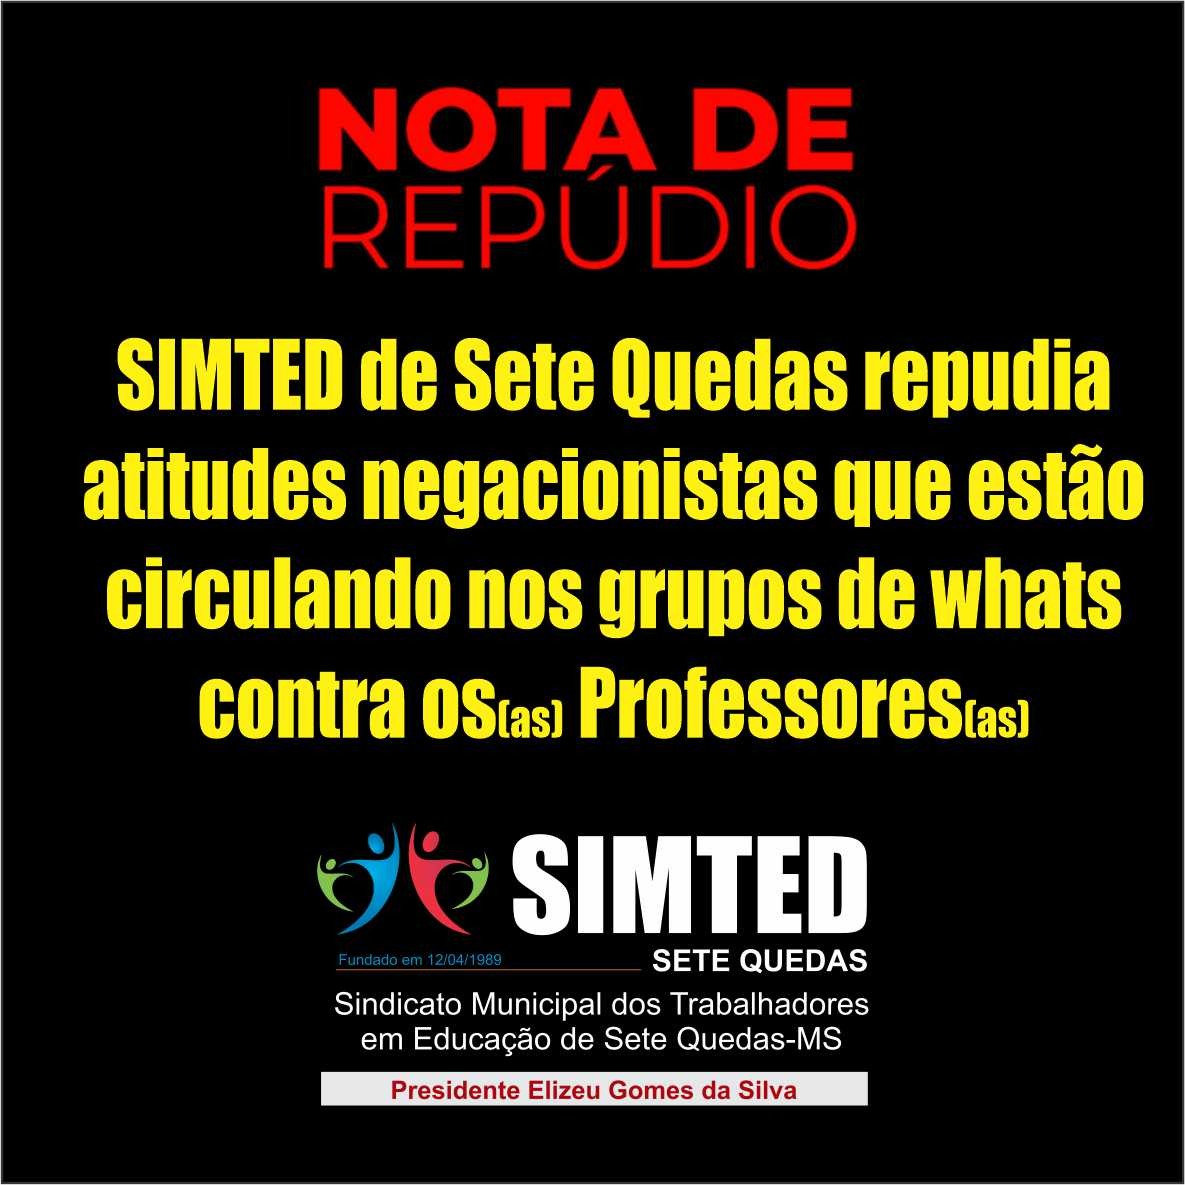 SIMTED de Sete Quedas repudia atitudes negacionistas que estão circulando nos grupos de whats contra os(as) Professores(as)